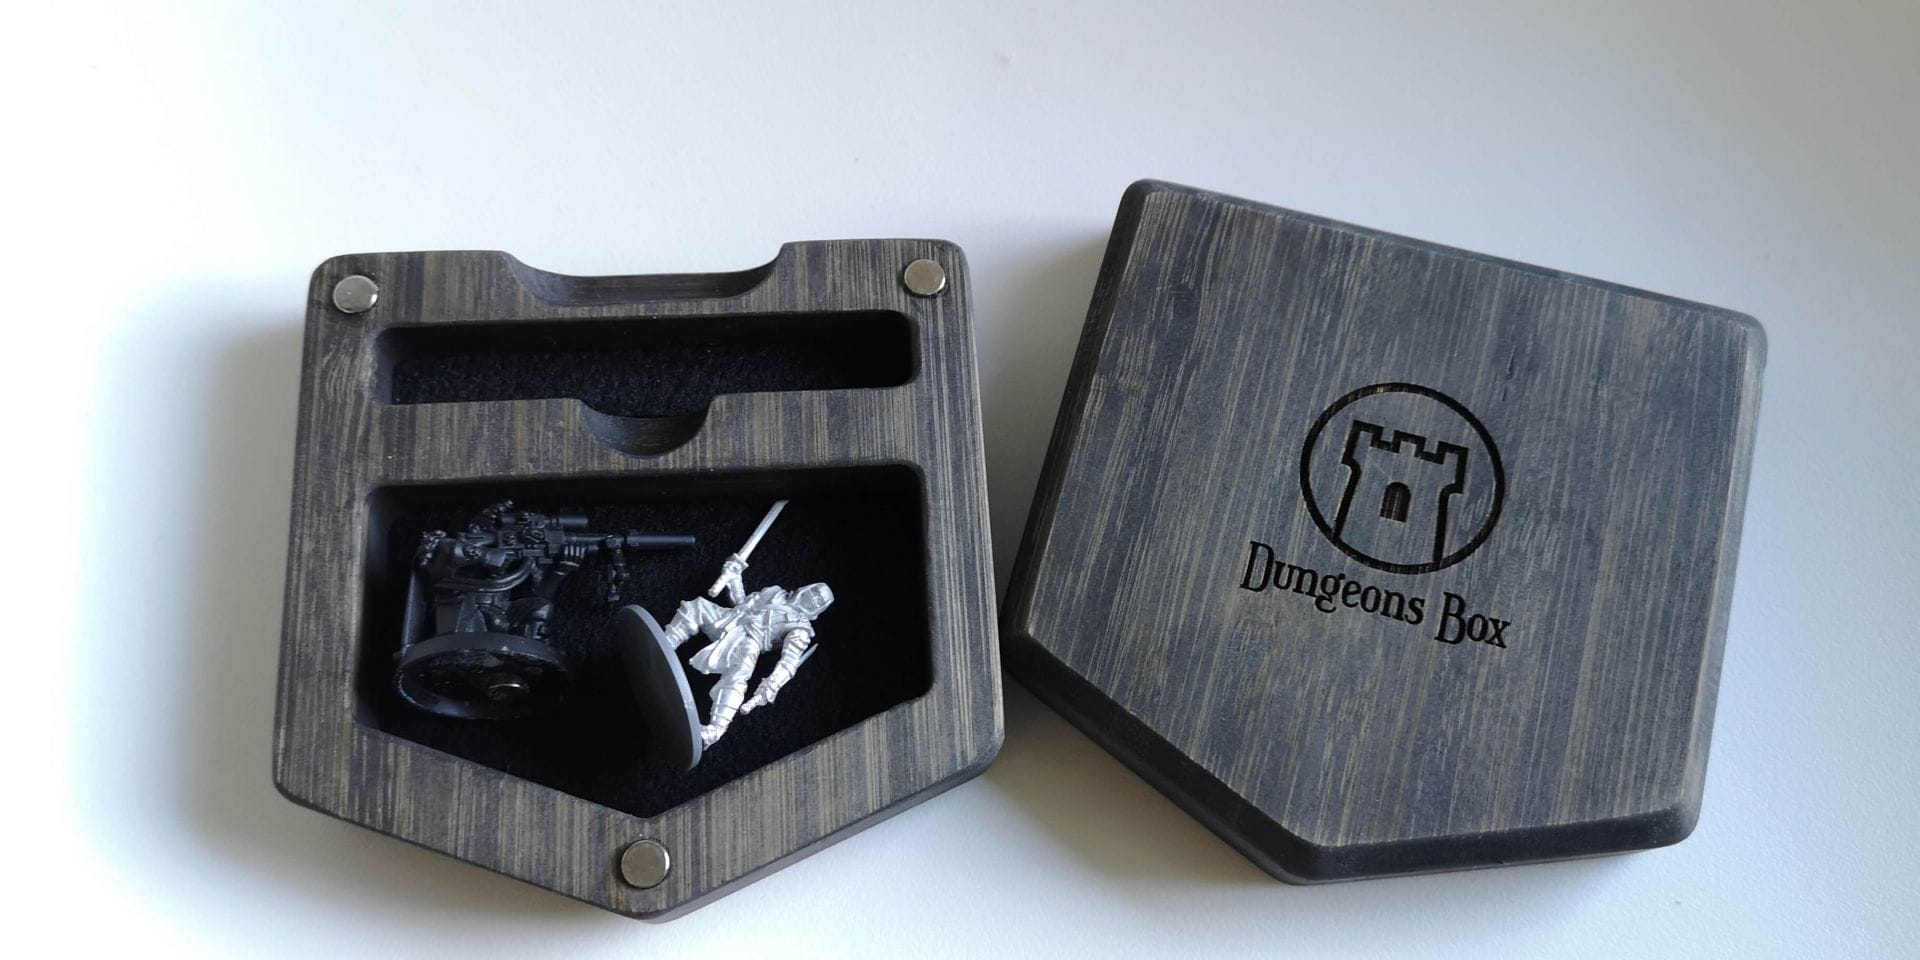 Dungeons Box Pocket